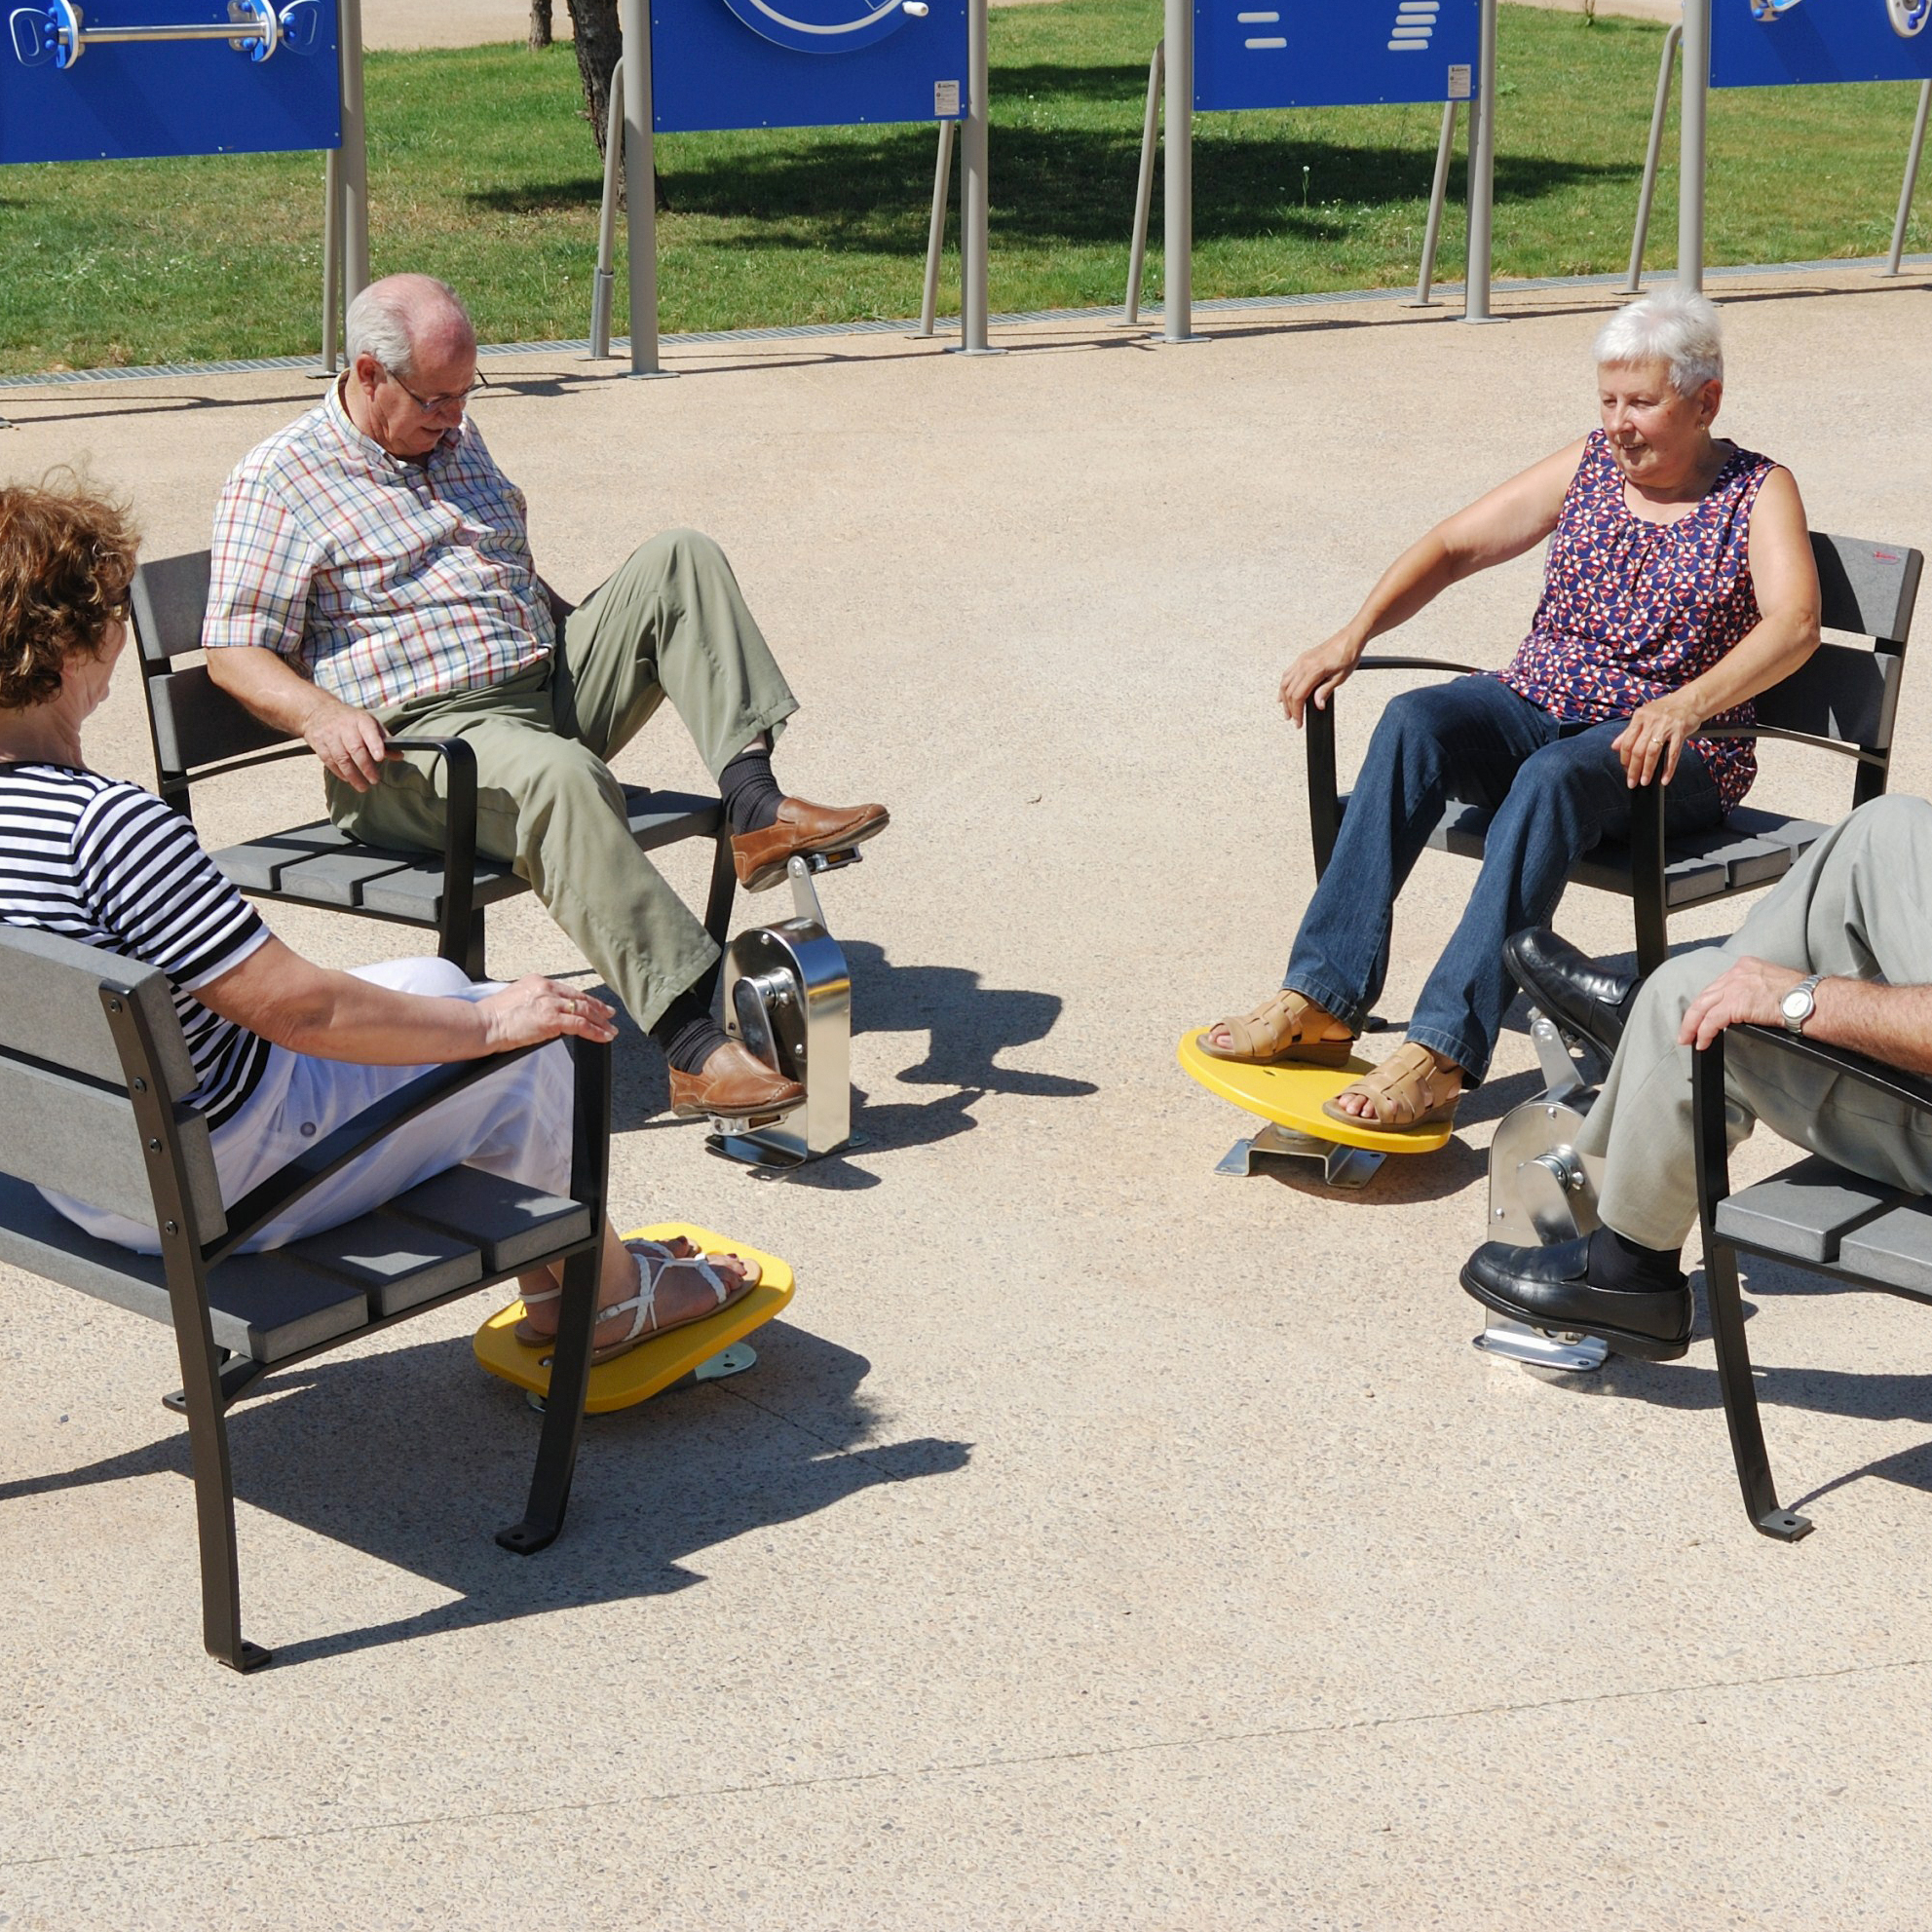 Seniorenfitness: Outdoorgeräte für mehr Mobilität im Alter